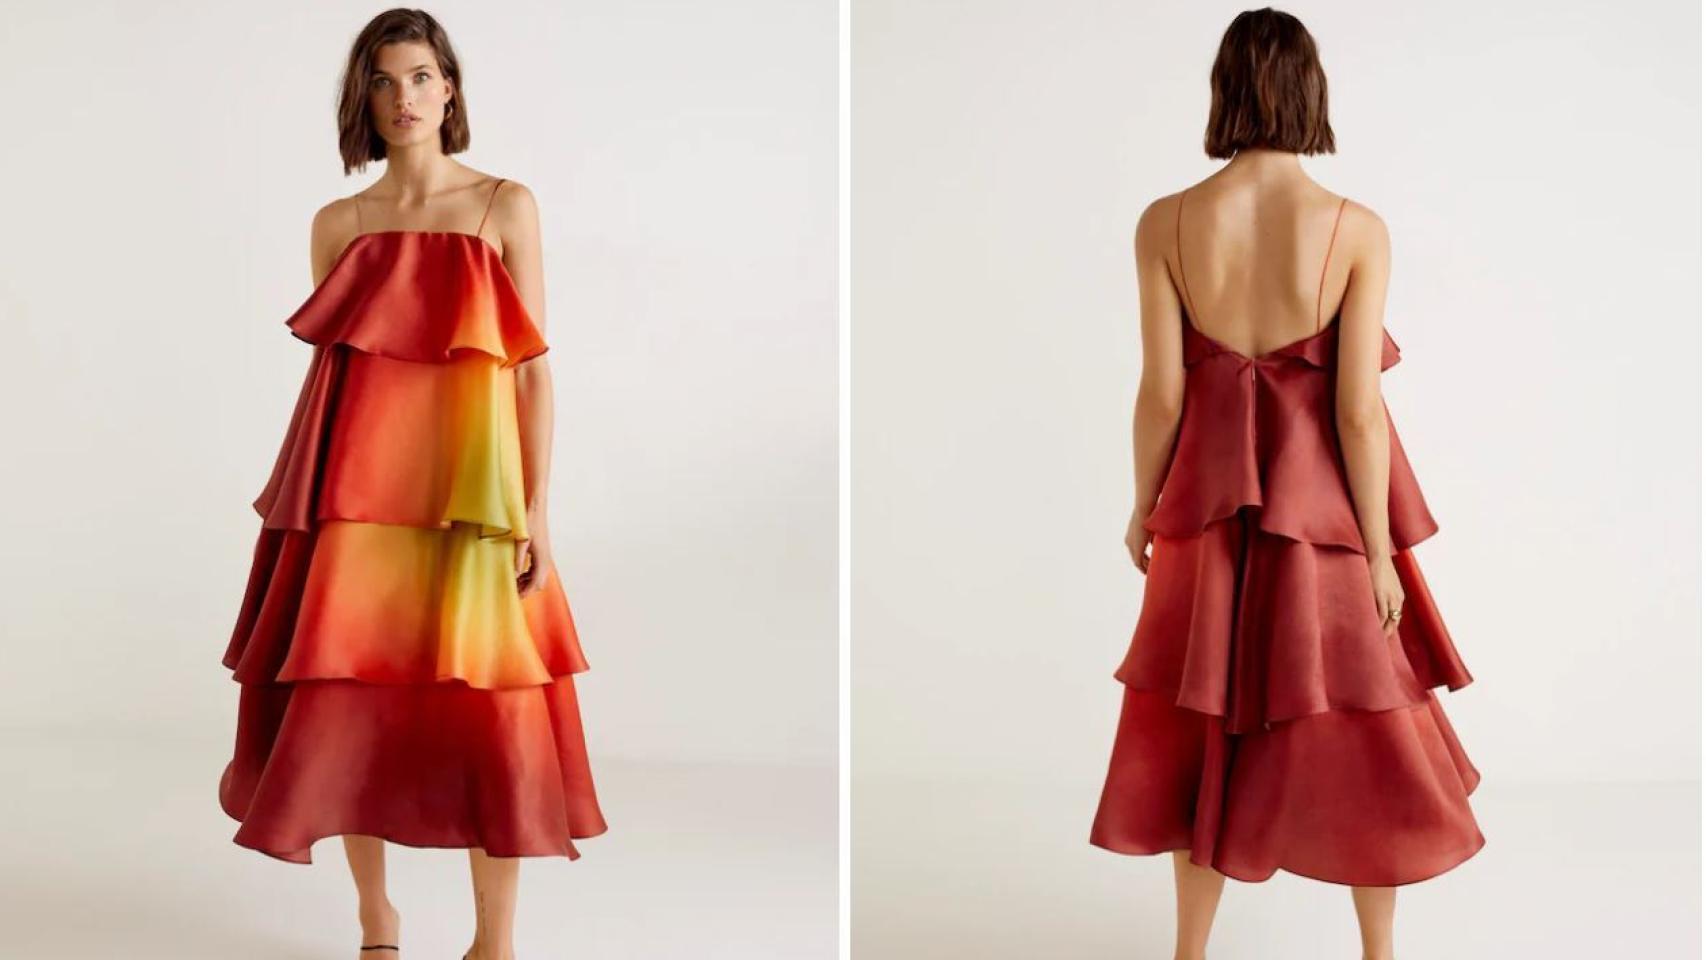 El vestido más caro de Mango cuesta 400 euros y ya tiene lista de espera